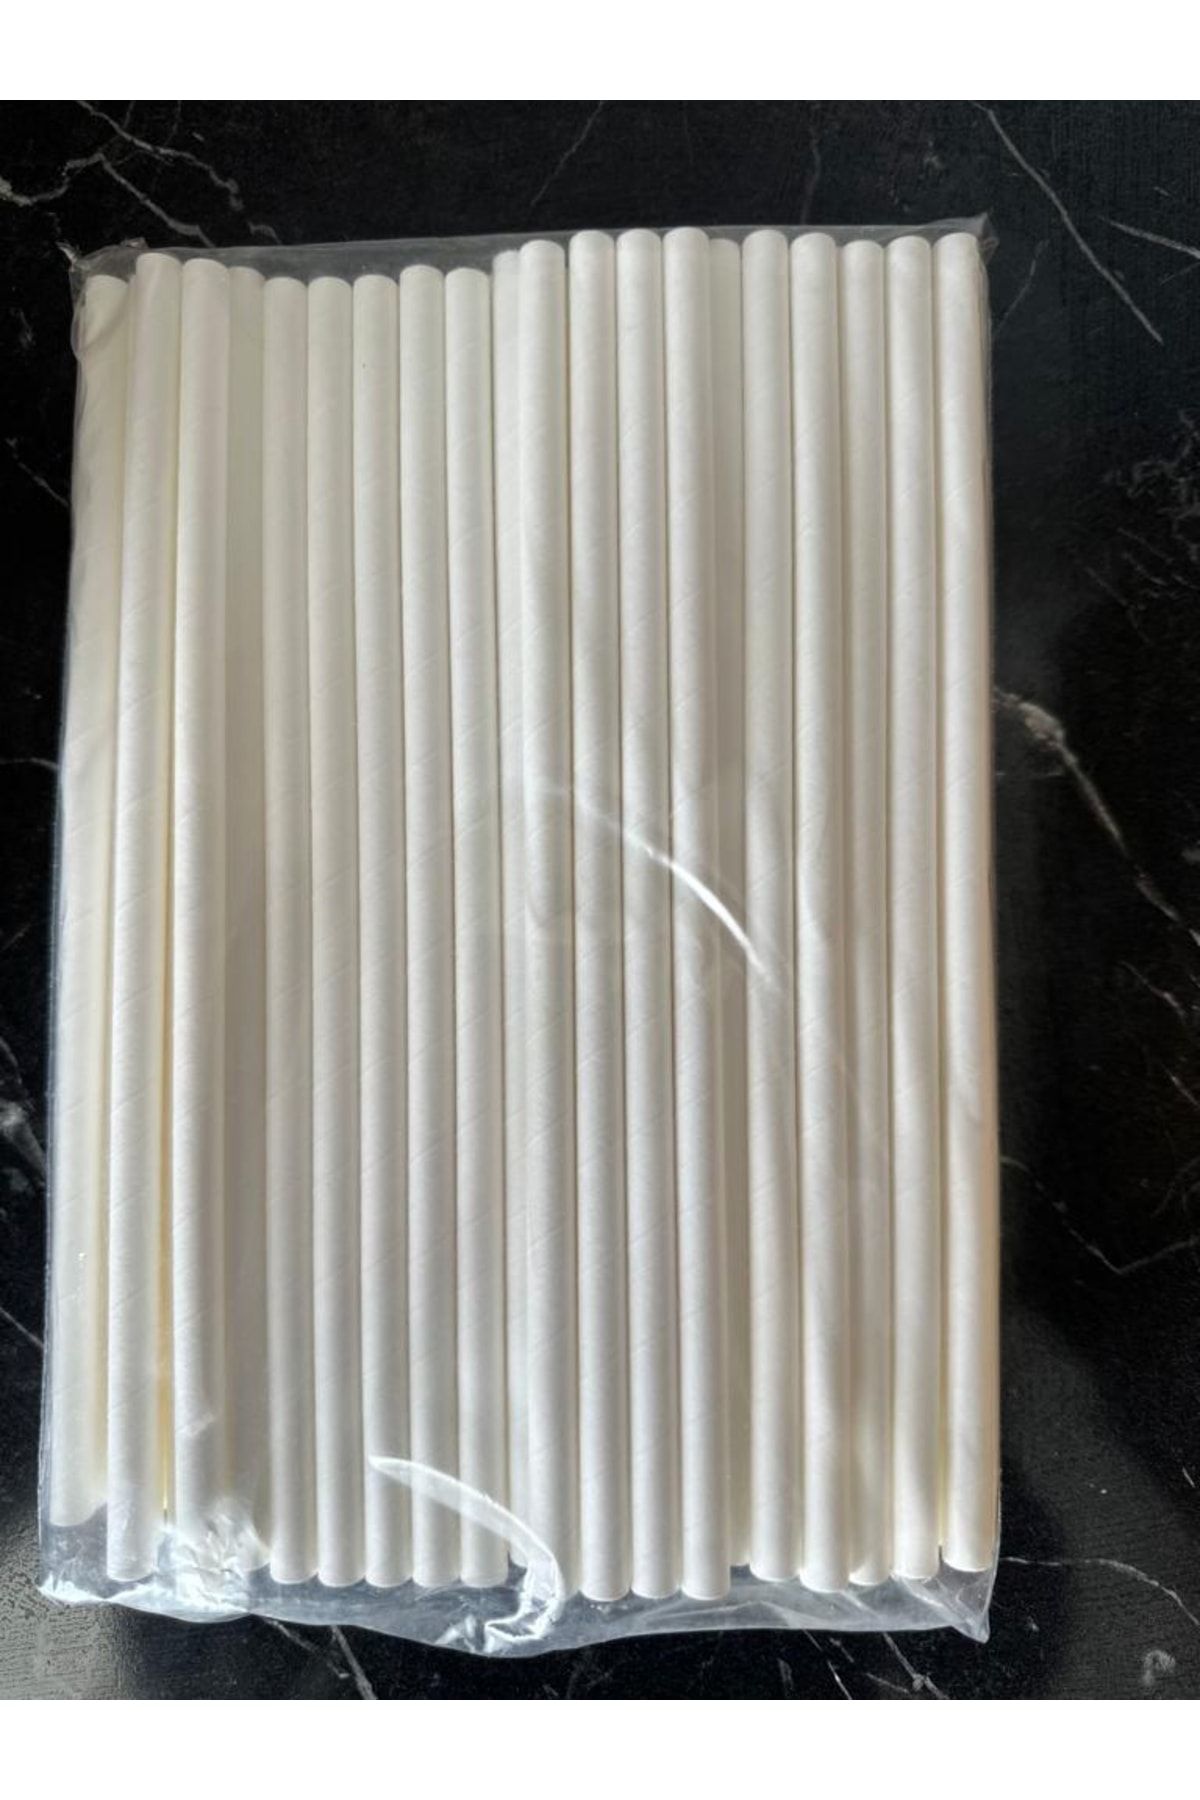 Pars Kağıt Pipet Beyaz 100 Adet 6 Mm*20 Cm- Doğayla Dost Geri Dönüştürülebilir Kağıt Pipet